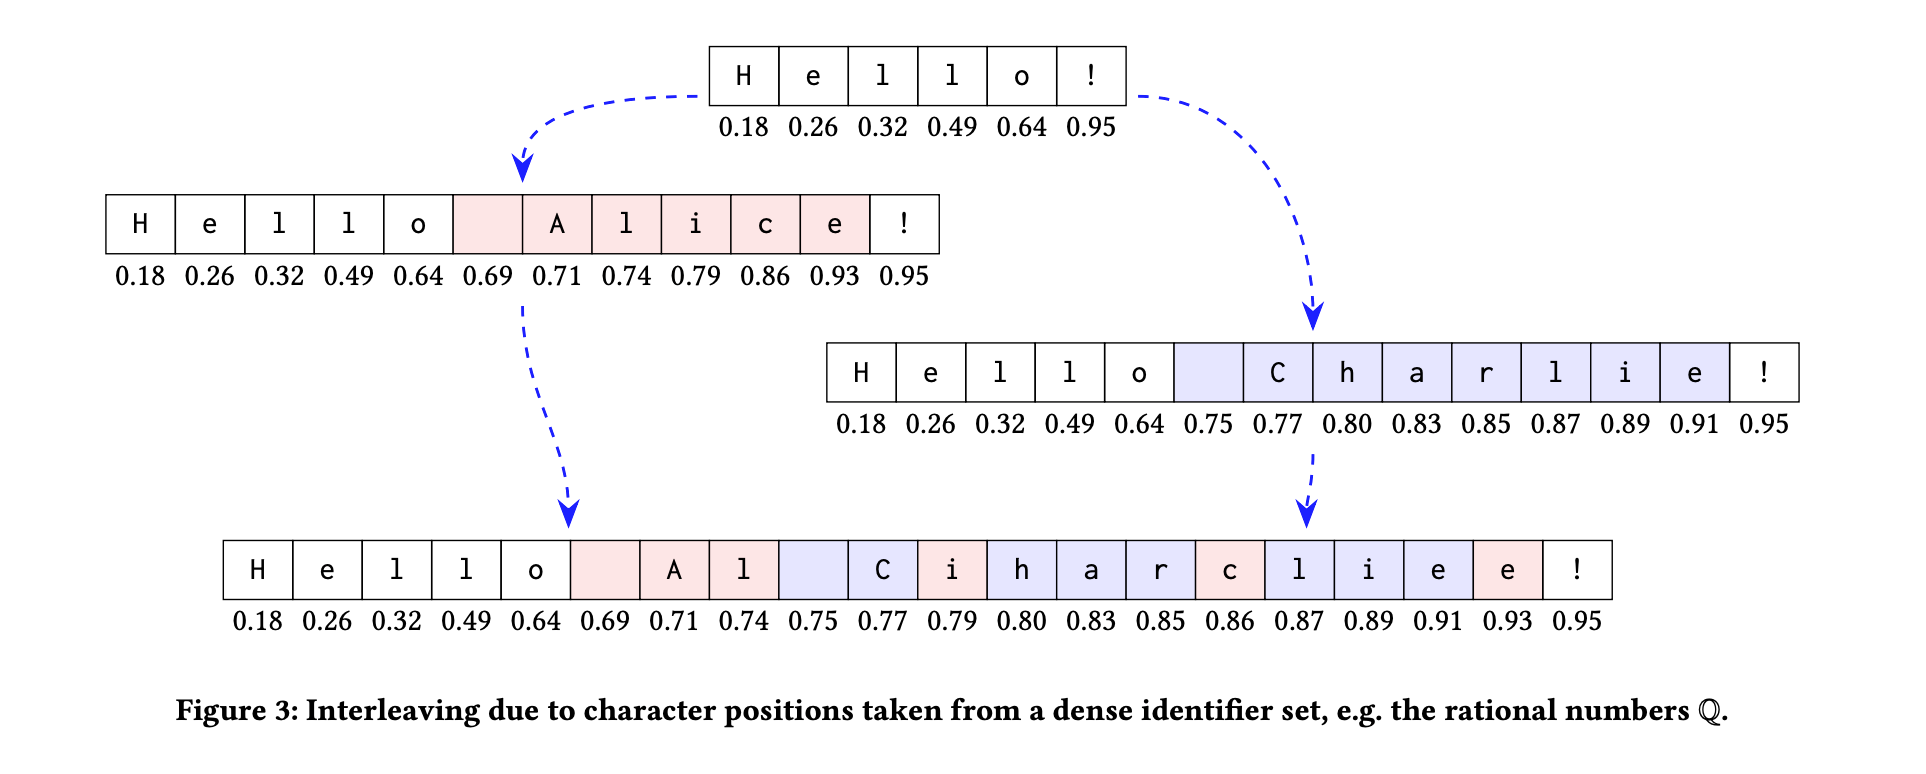 这是一个在使用文本编辑中的分数索引 CRDT 时出现的交错异常的实例。图中展示了如何在多用户协作编辑时，操作可能会相互干扰，导致意想不到的编辑结果。图来源：Martin Kleppmann, Victor B. F. Gomes, Dominic P. Mulligan, 和 Alastair R. Beresford 的 2019 年研究《协作文本编辑器中的交错异常》。